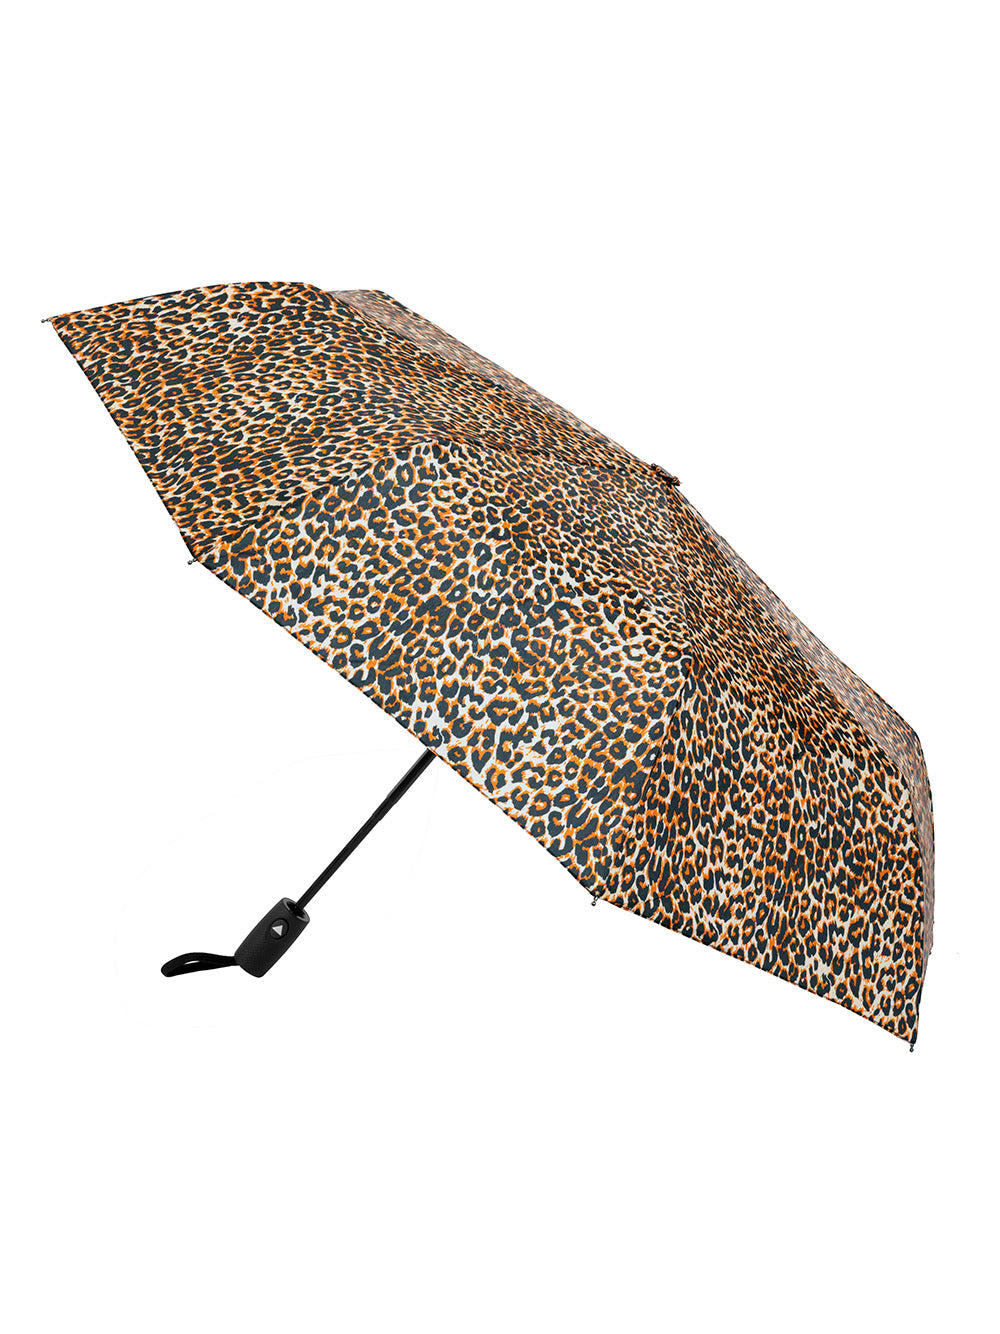 Easy Open Umbrella - Animal